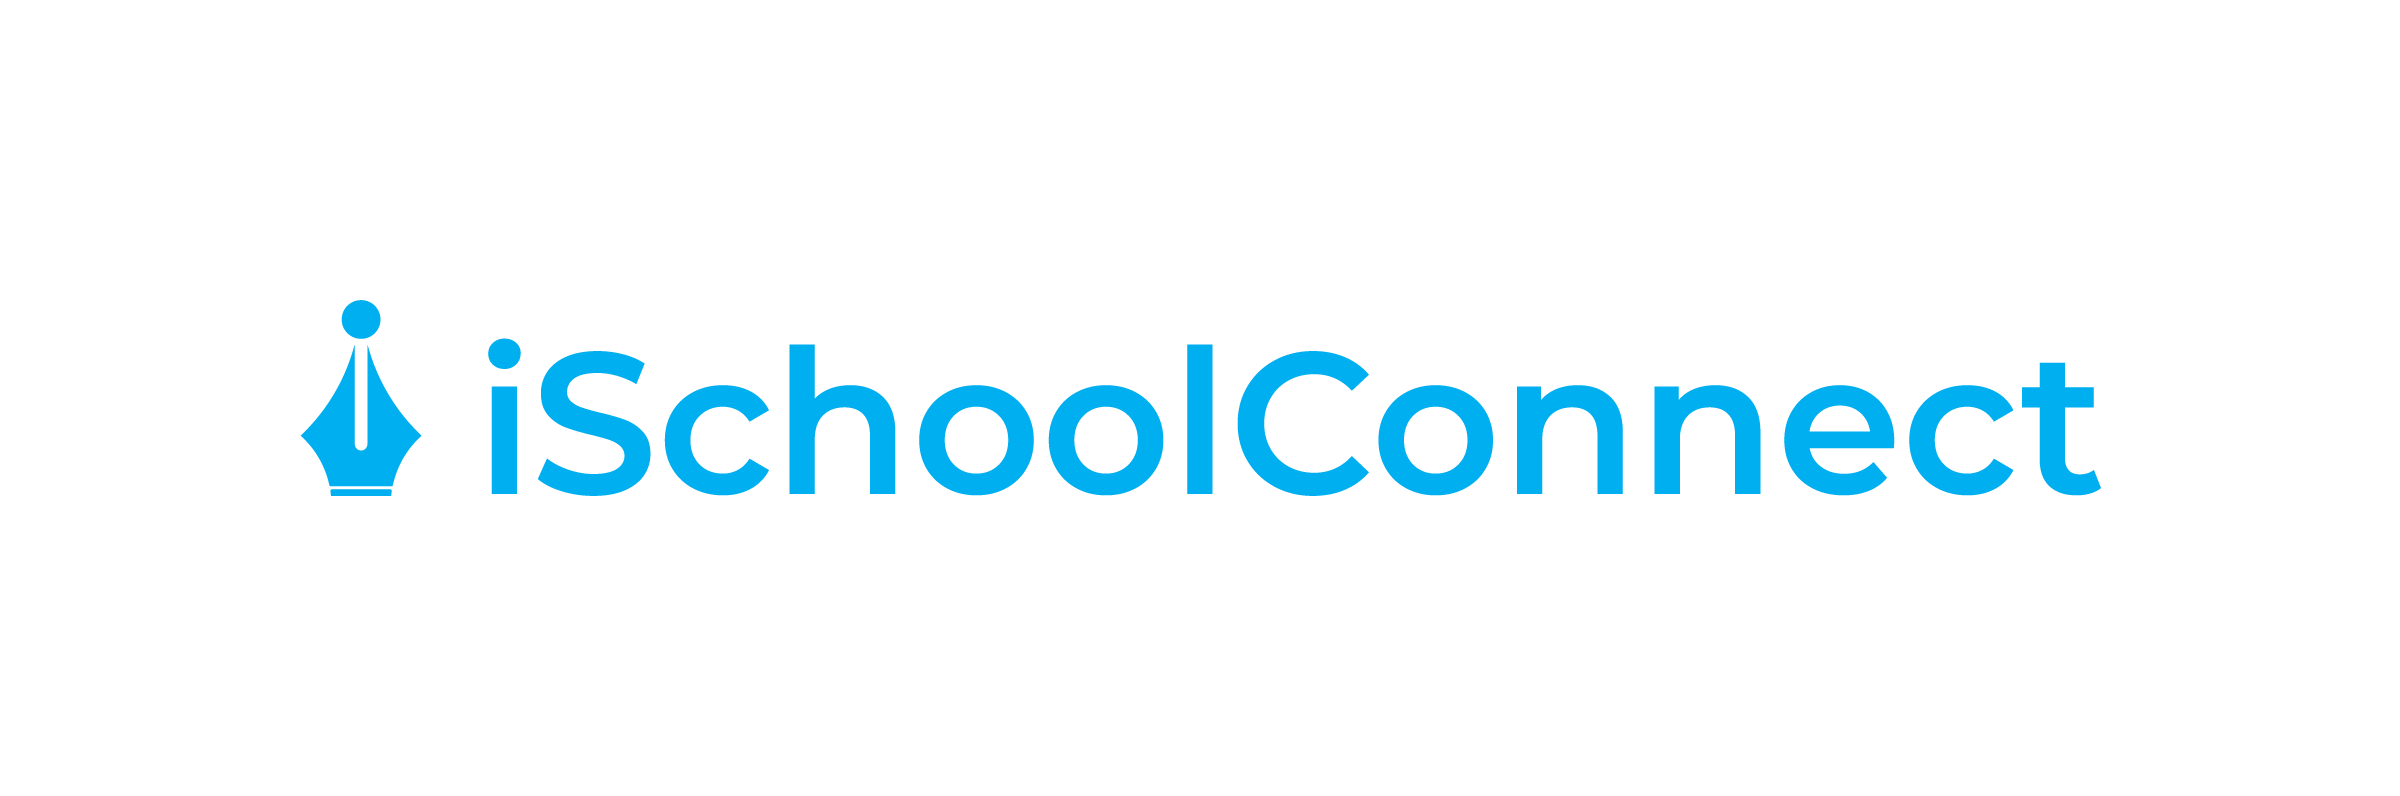 iSchoolConnect Logo